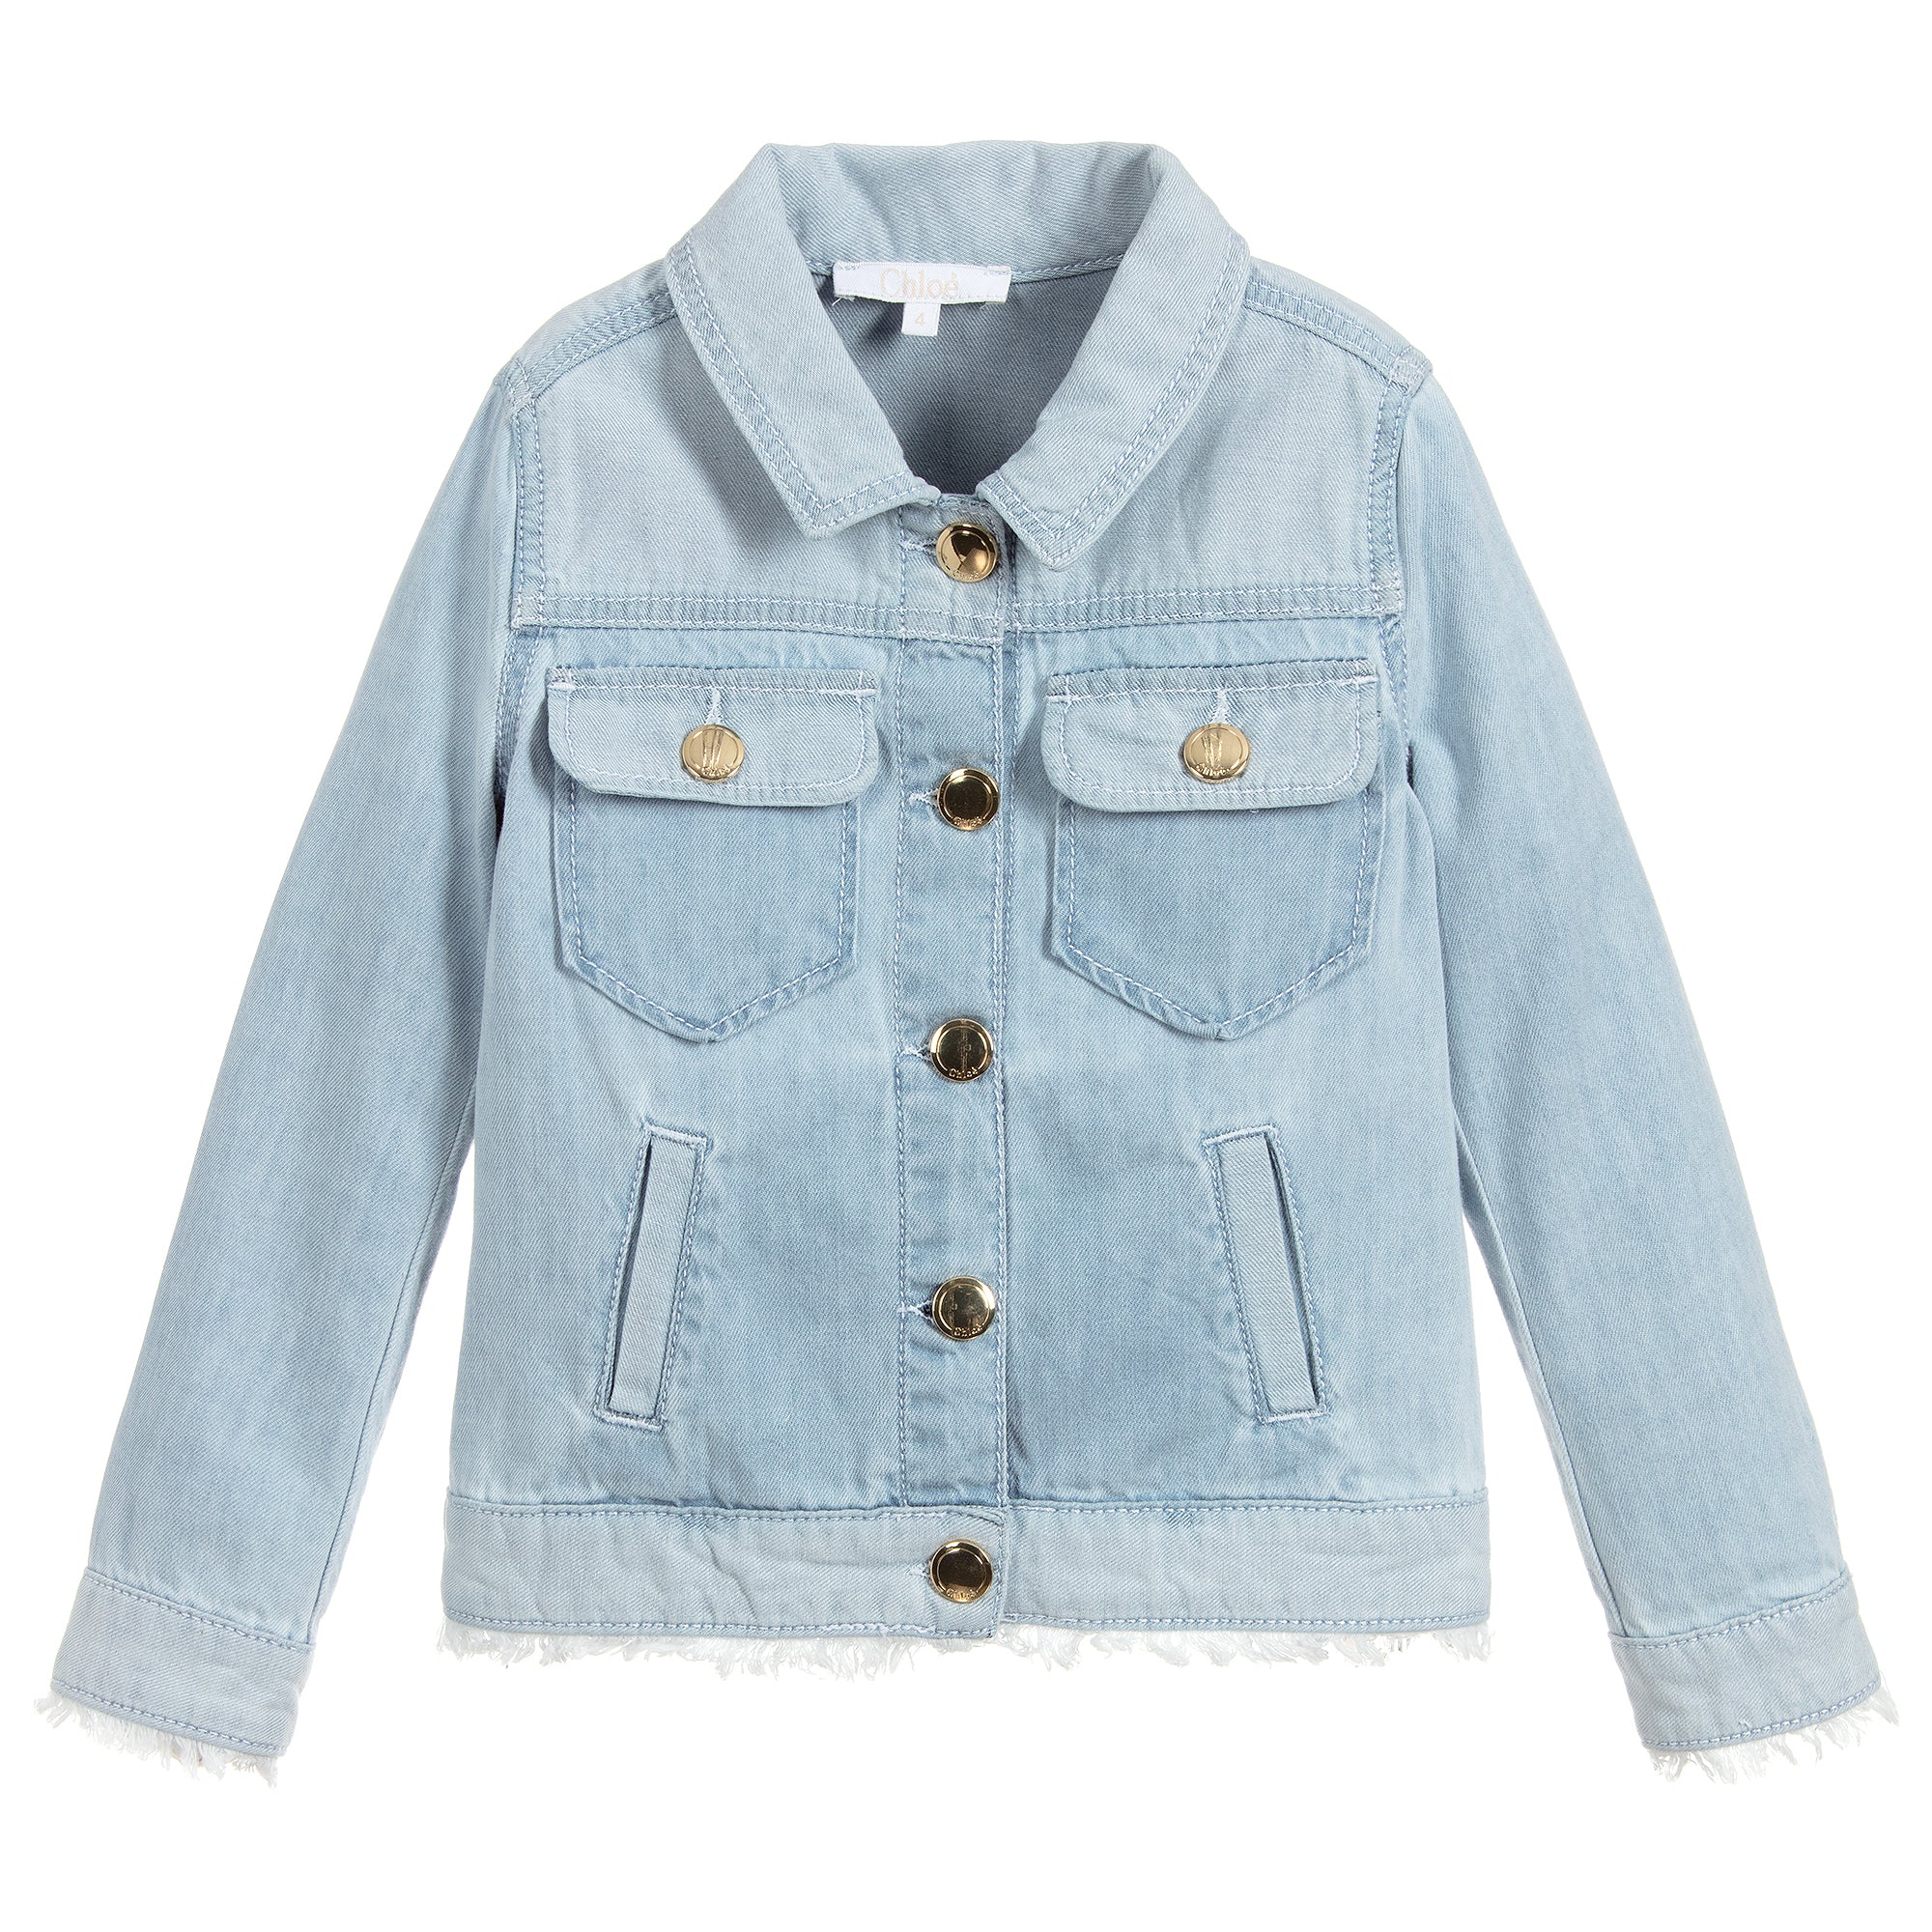 Chloé Girls Light Blue Denim Jacket (Mini-Me) – Petit New York